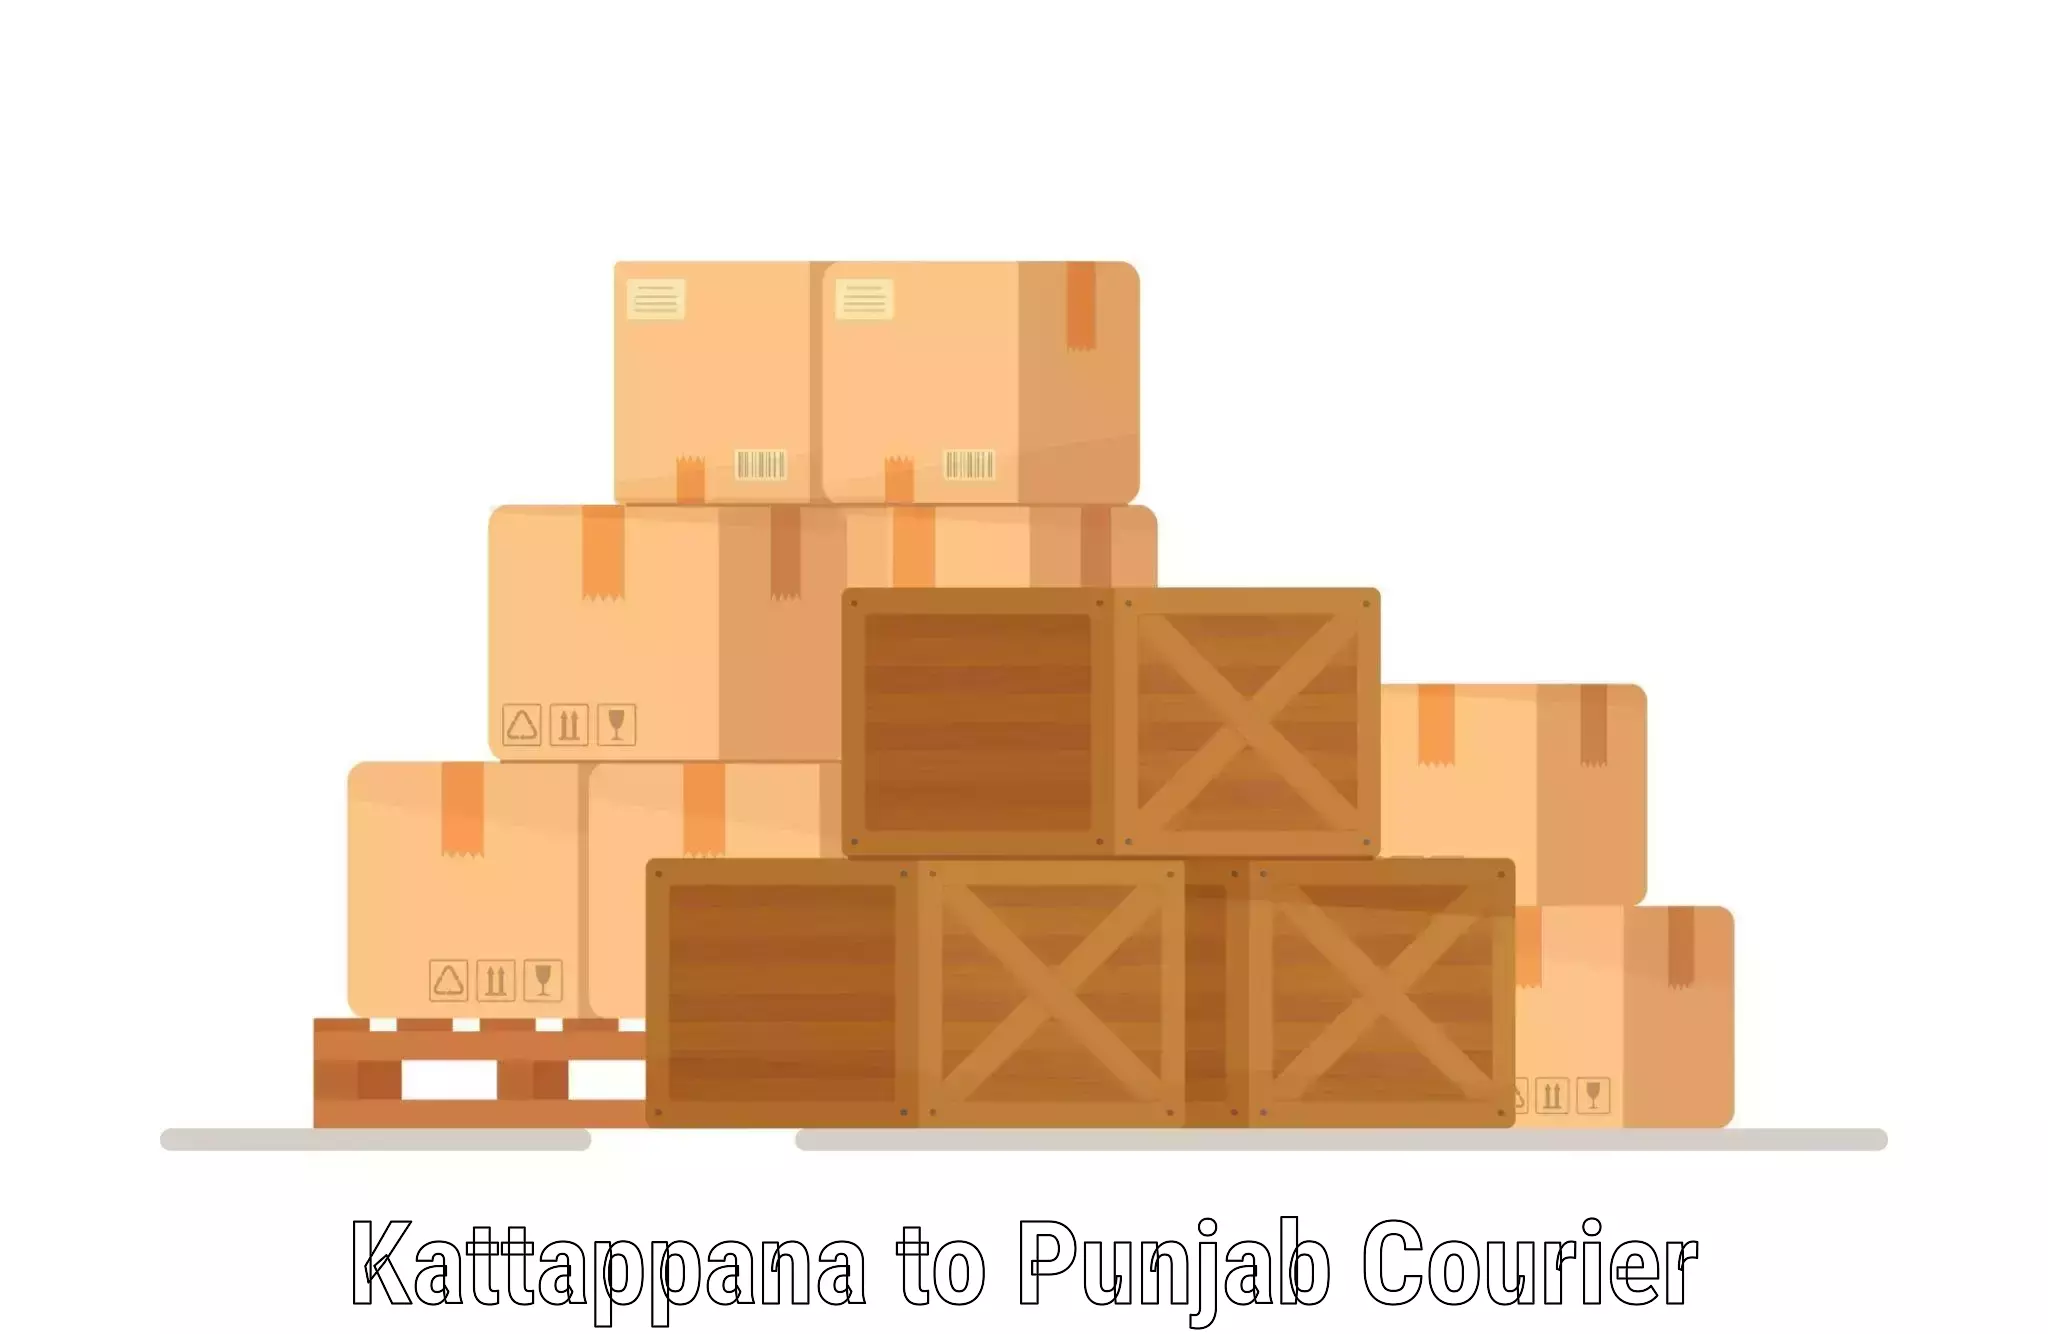 Cargo delivery service Kattappana to Raikot